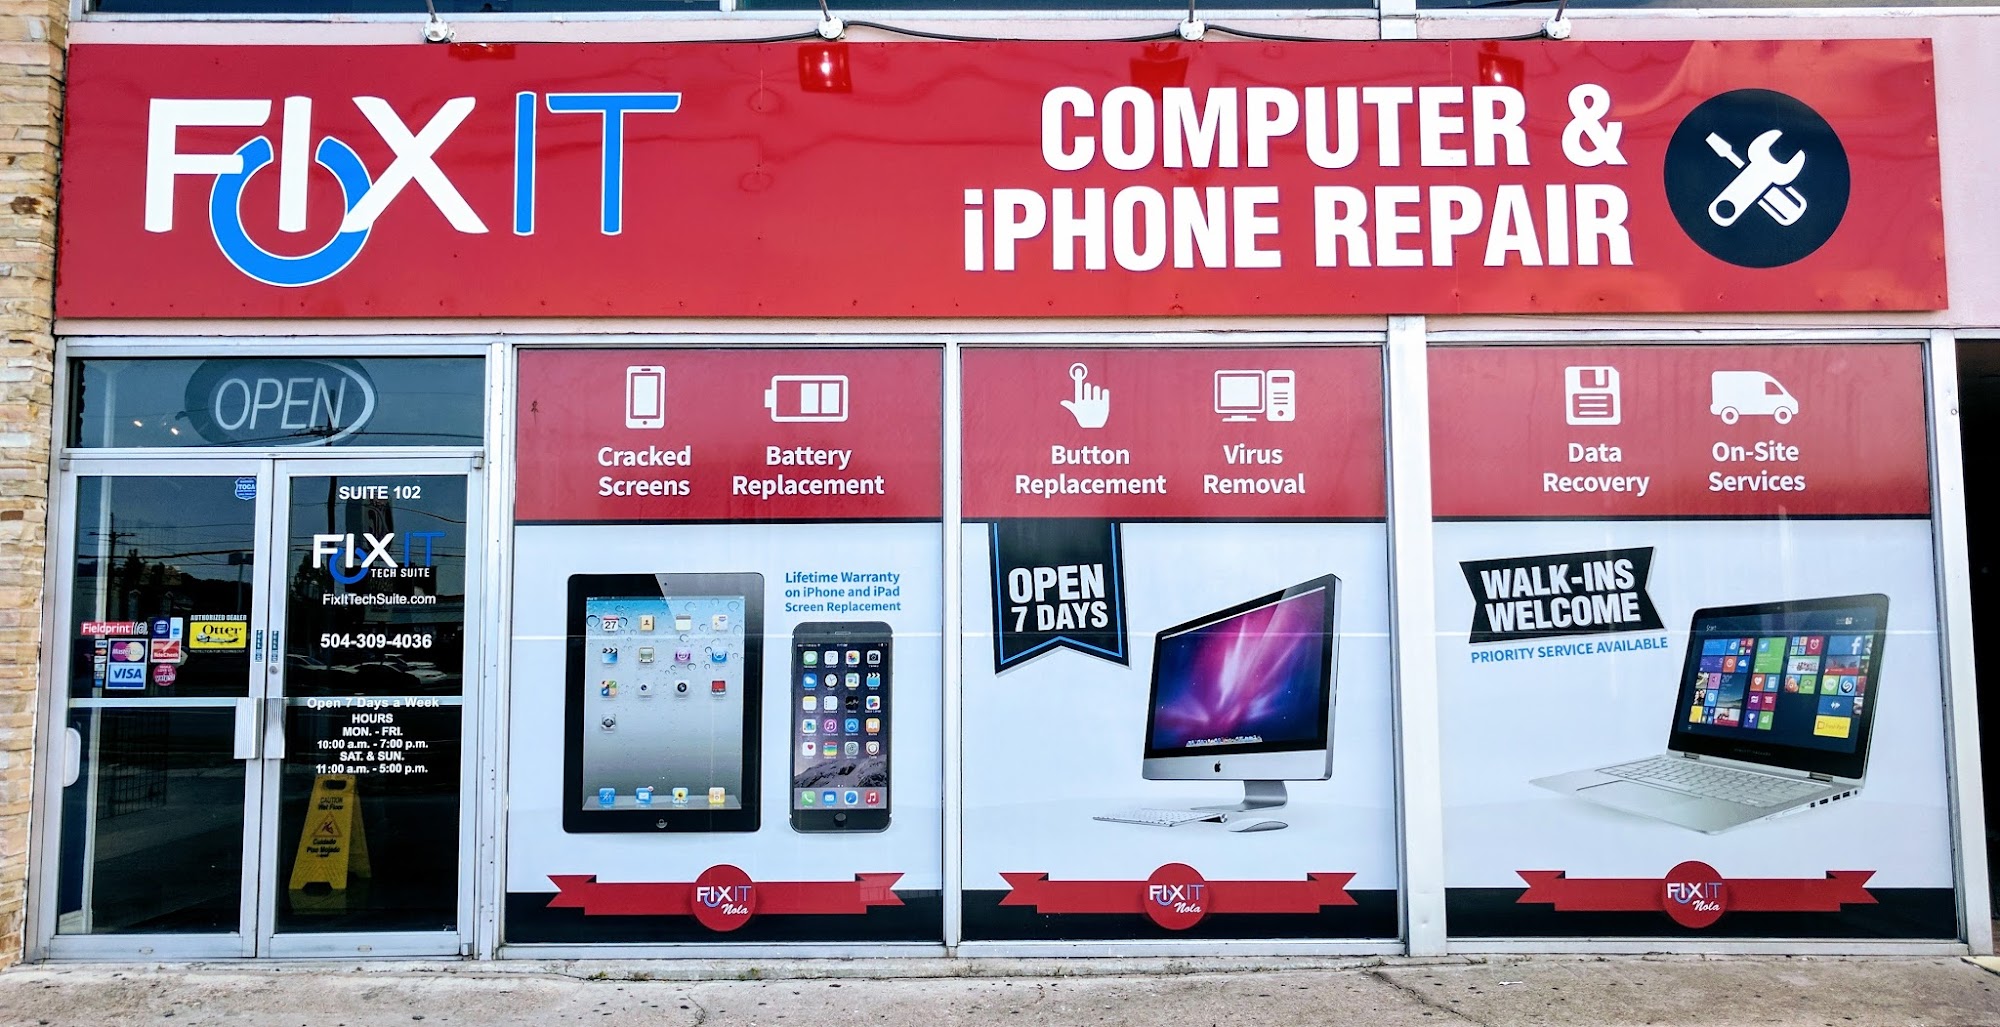 Fixit Computer & iPhone Repair